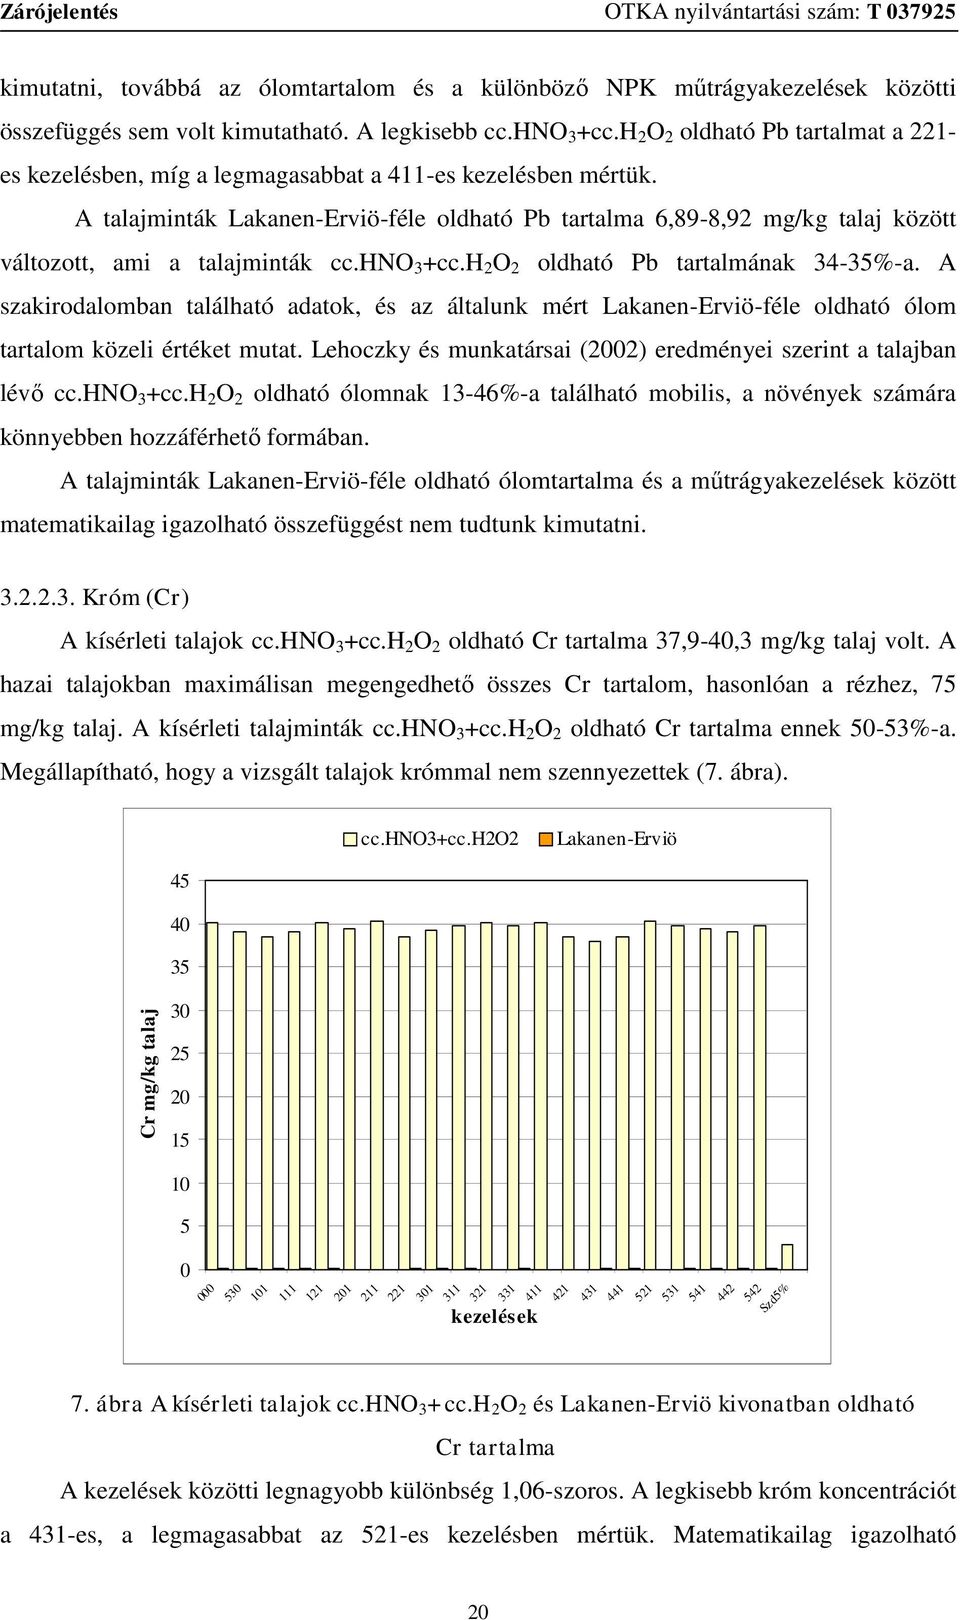 A talajminták Lakanen-Erviö-féle oldható Pb tartalma 6,89-8,92 mg/kg talaj között változott, ami a talajminták cc.hno 3 +cc.h 2 O 2 oldható Pb tartalmának 34-35%-a.